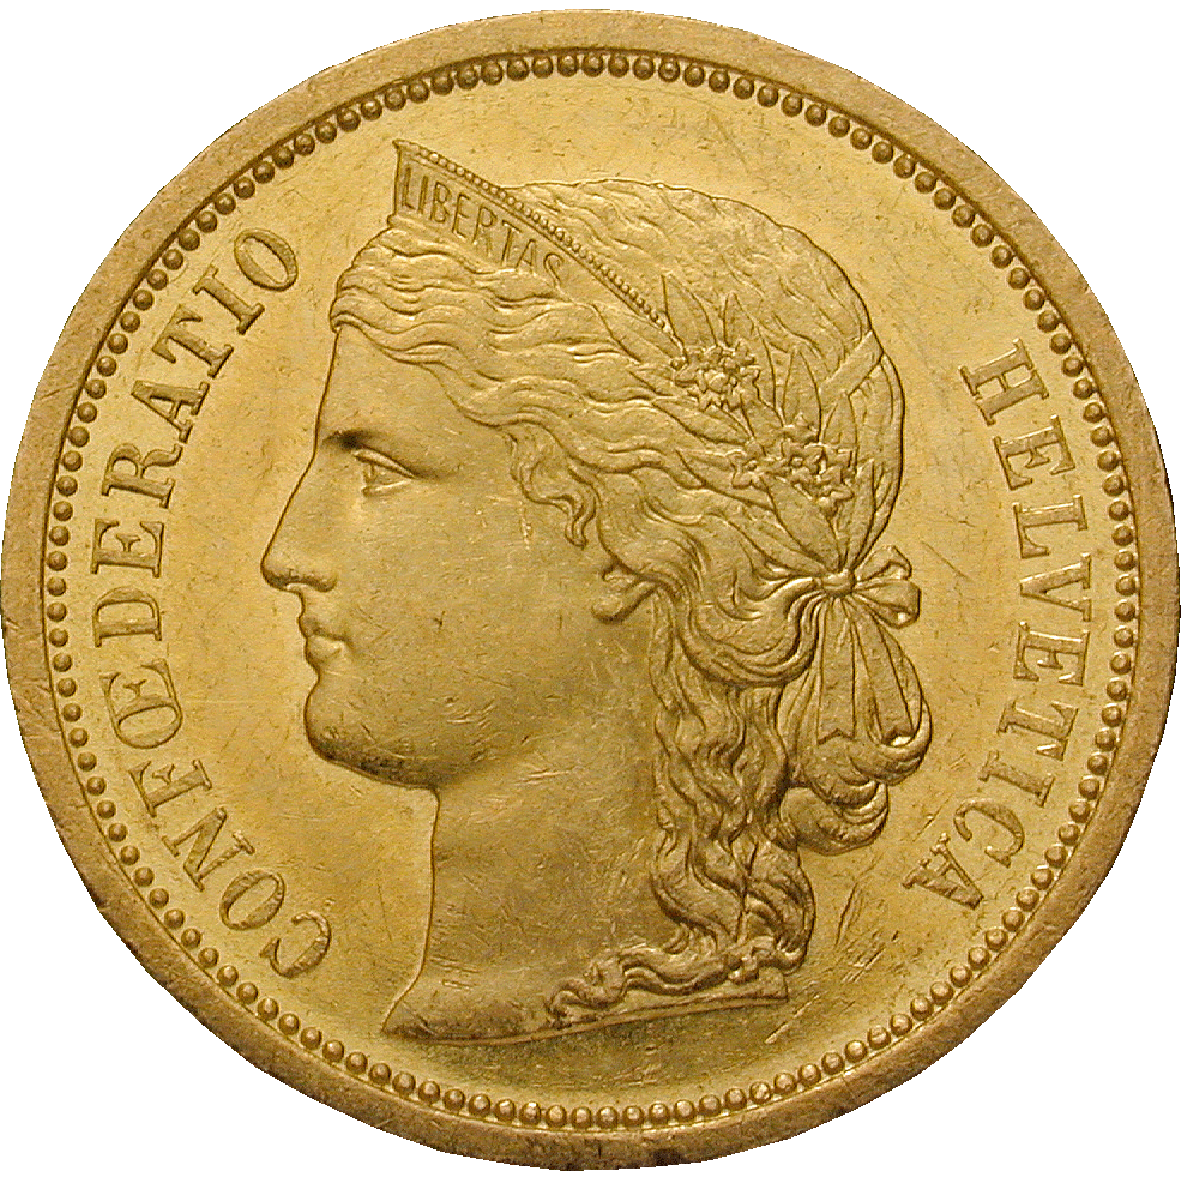 Schweizerische Eidgenossenschaft, 20 Franken 1883 (obverse)